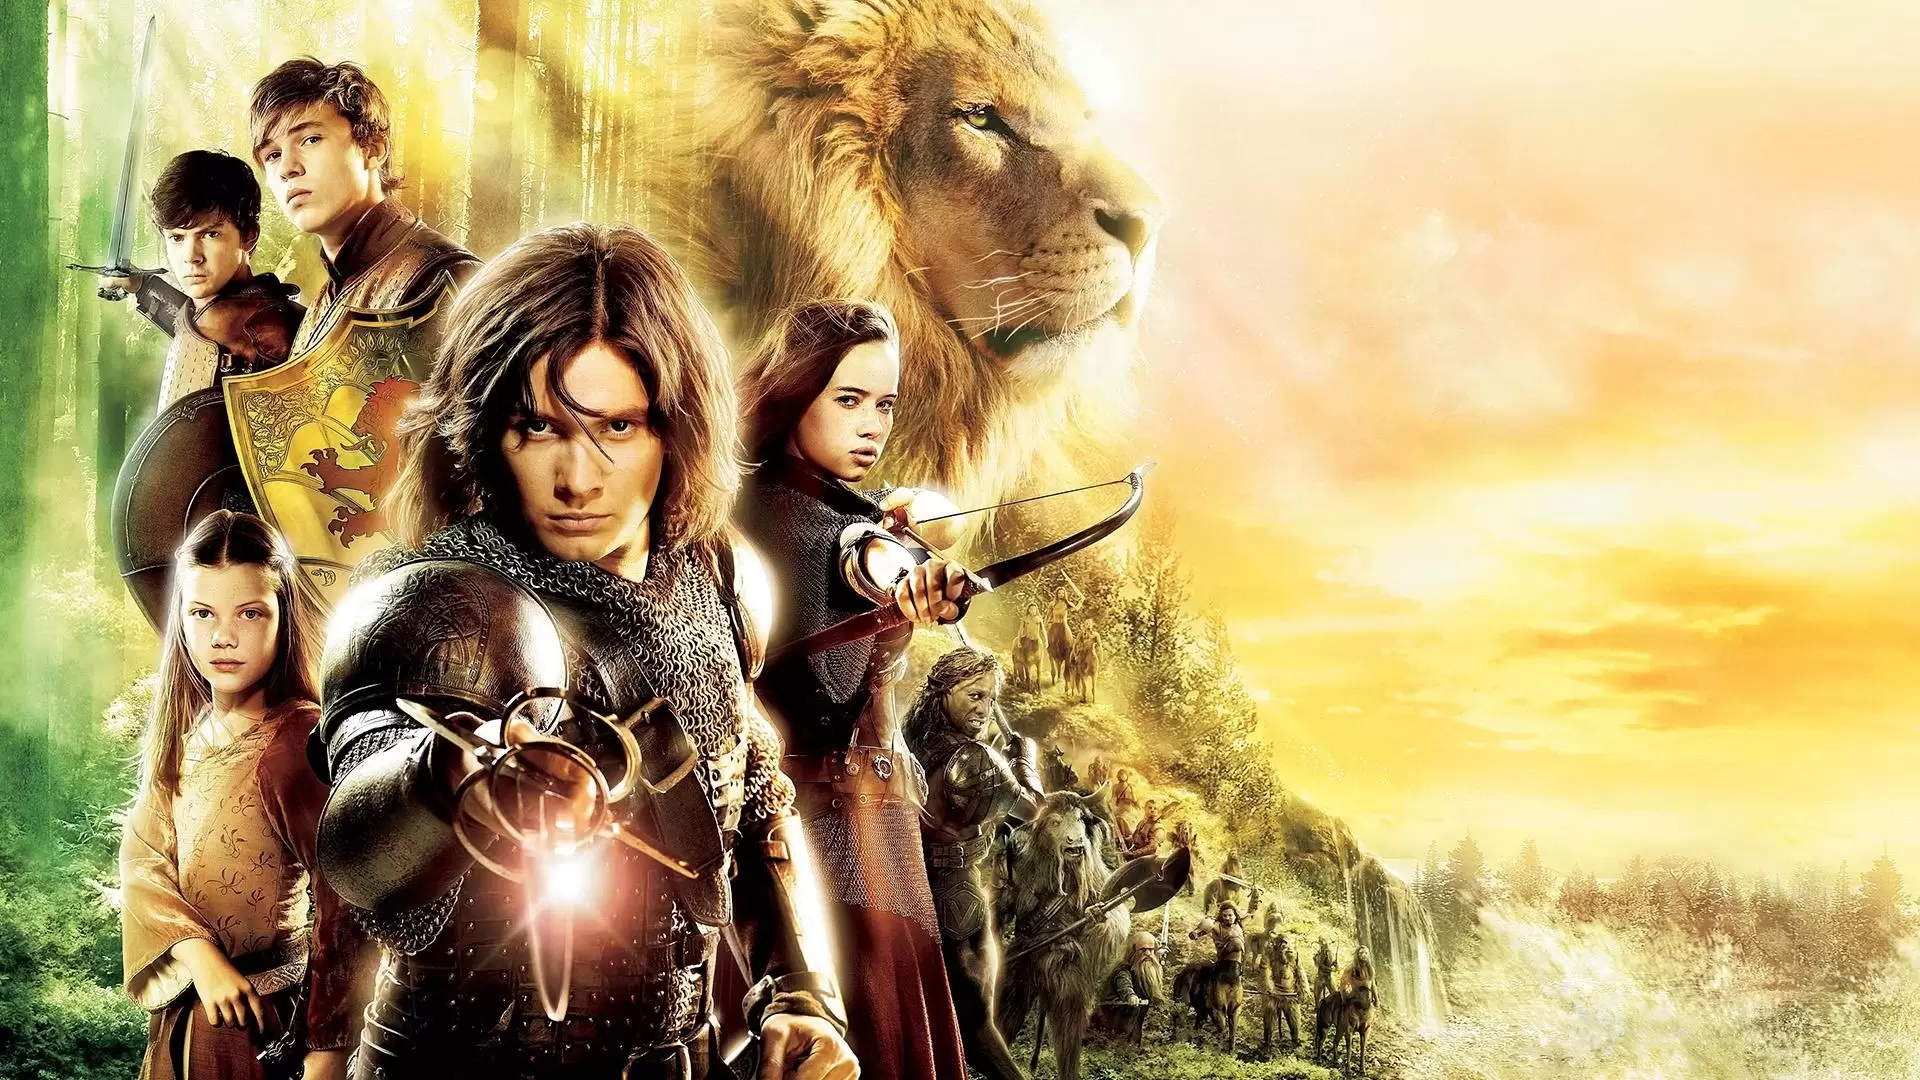 دانلود فیلم The Chronicles of Narnia: Prince Caspian 2008 (سرگذشت نارنیا: شاهزاده کاسپین) با زیرنویس فارسی و تماشای آنلاین